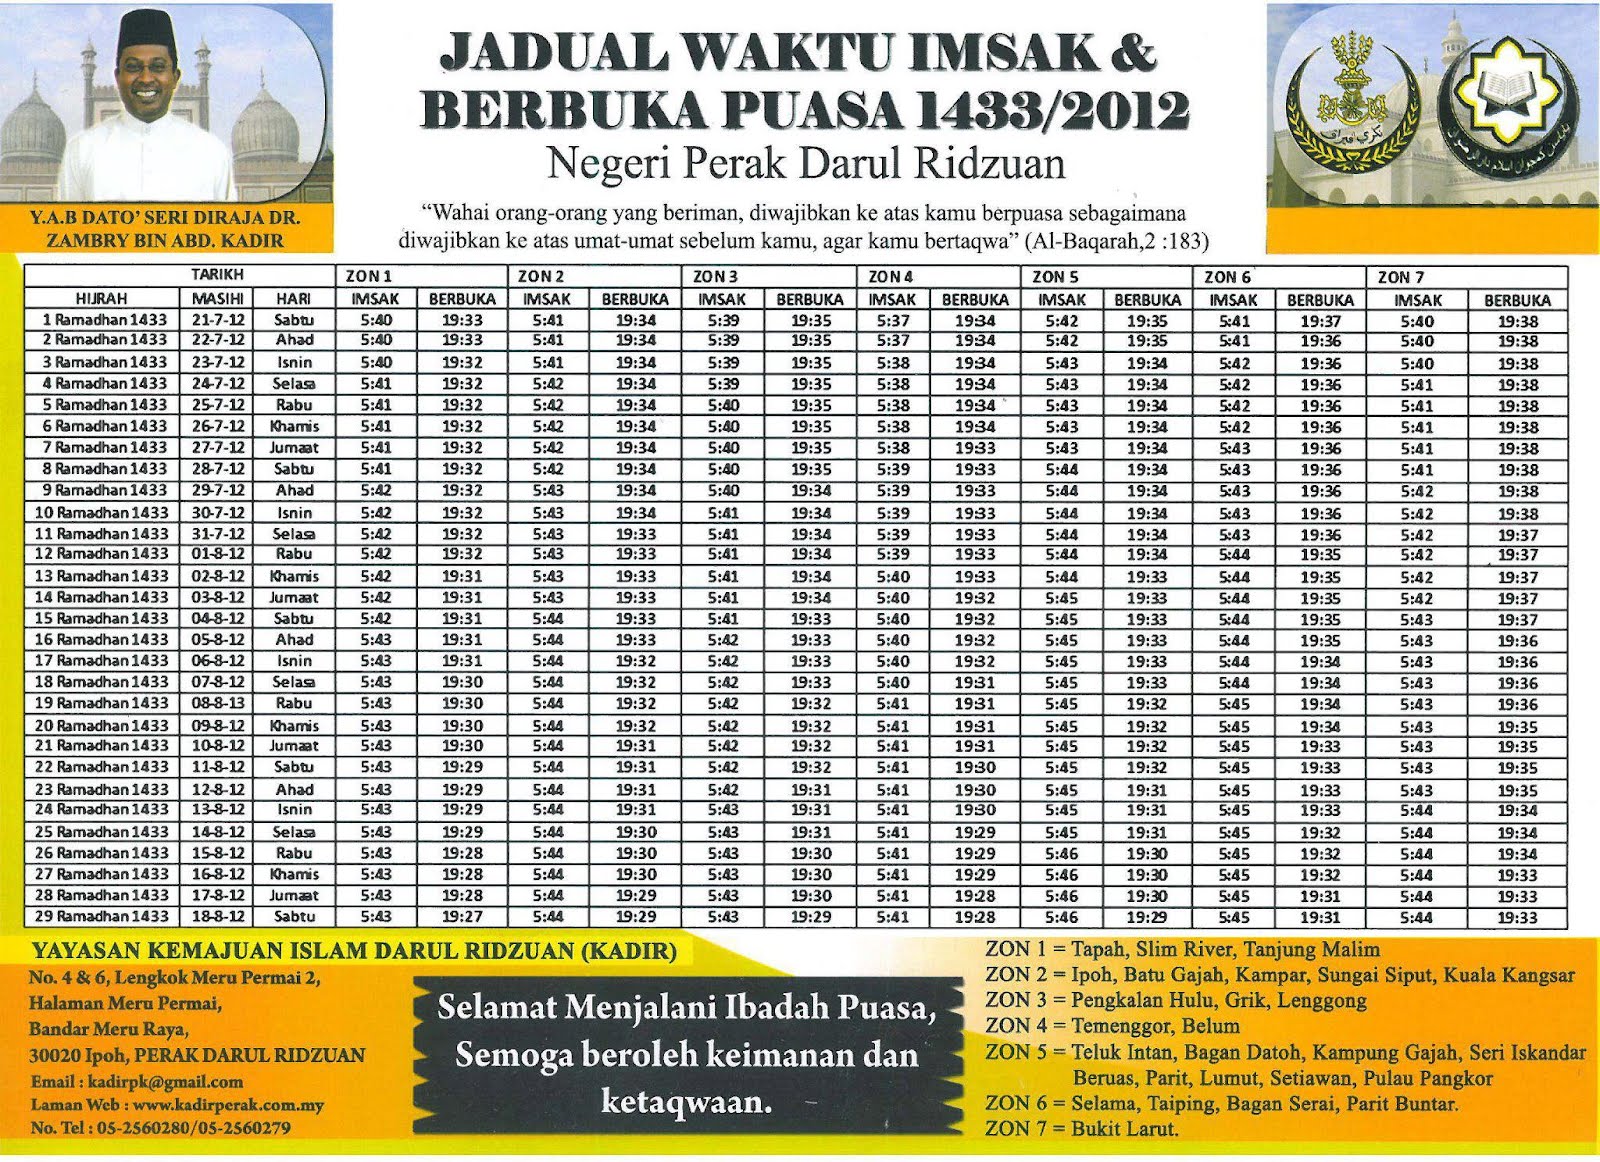 JADUAL WAKTU SOLAT NEGERI PERAK 2013 PDF